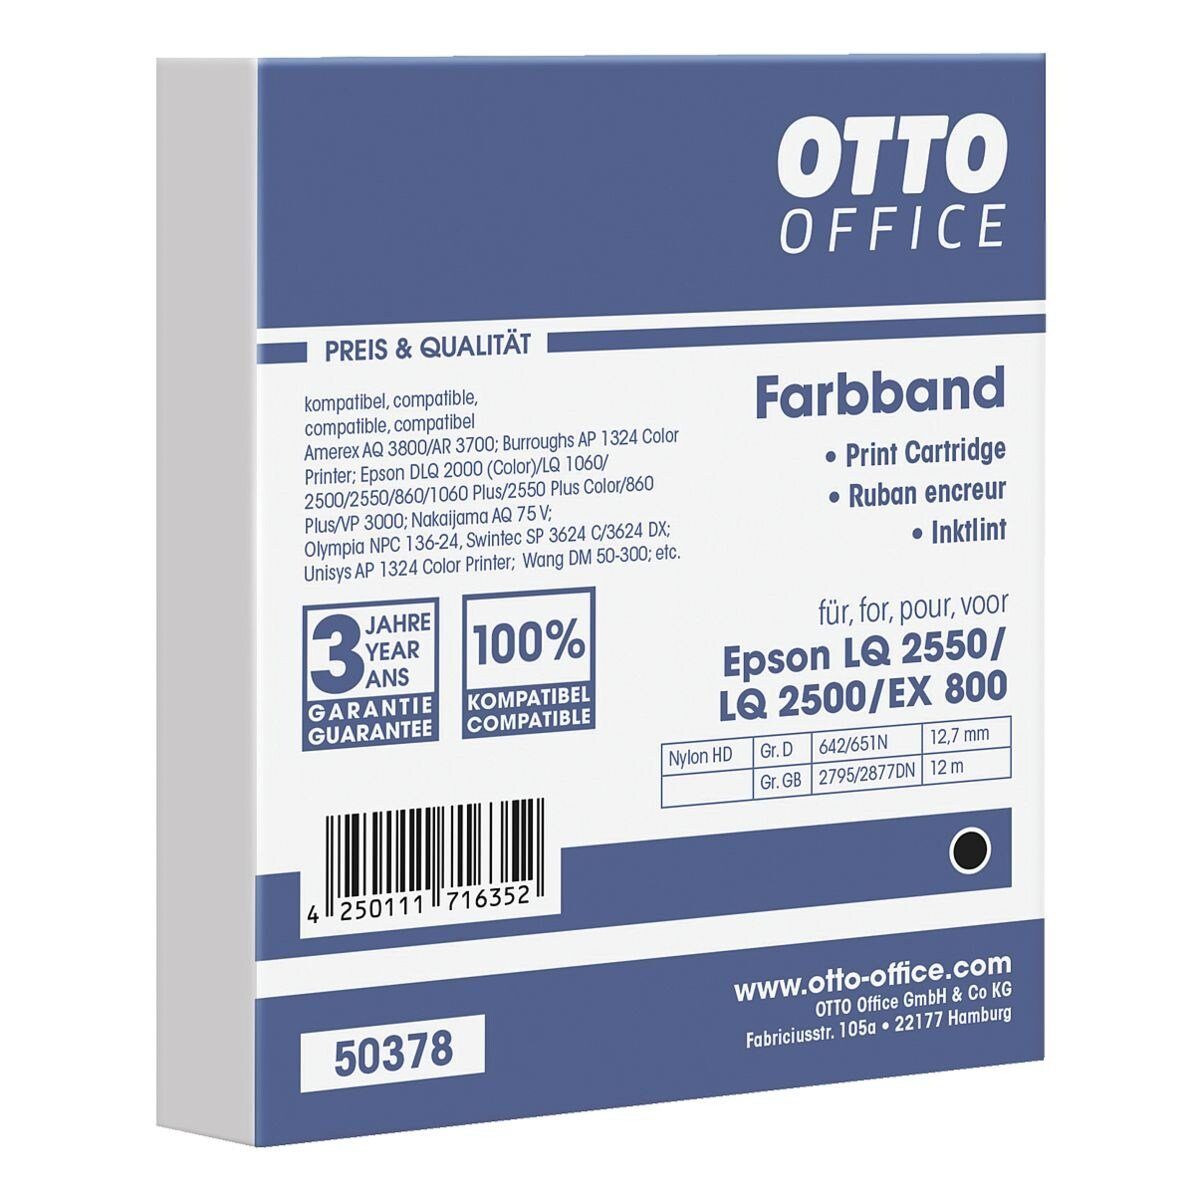 Otto Office  Office Druckerband S015262, Farbband für Nadeldrucker, Gruppe 651/642/639, schwarz